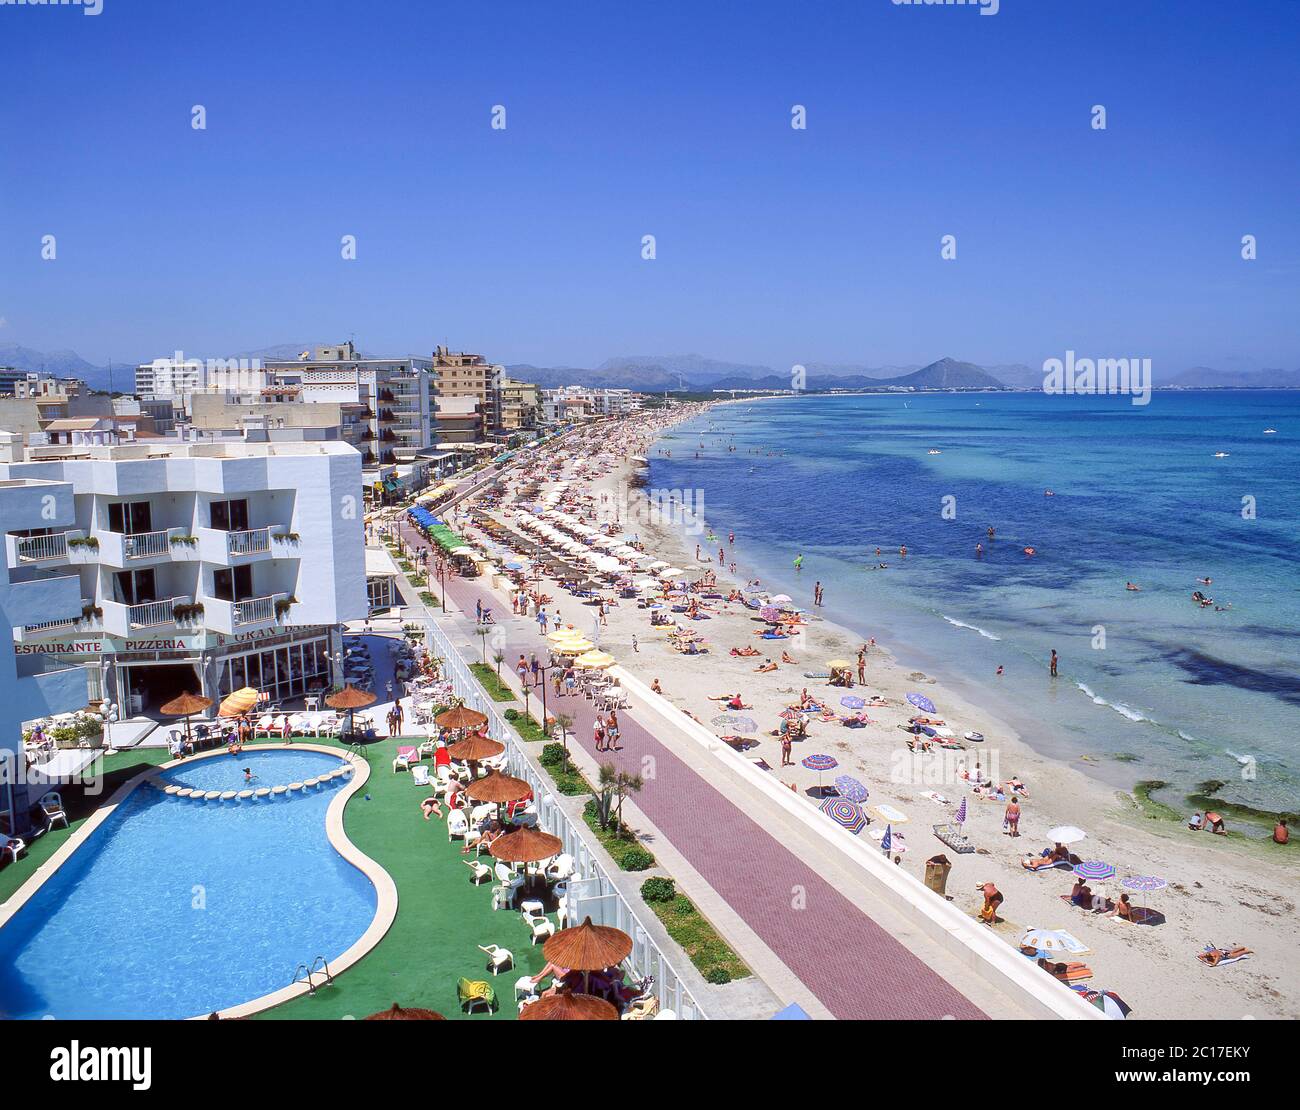 Vista sulla spiaggia e sul resort, Can Picafort, Maiorca (Maiorca), Isole Baleari, Spagna Foto Stock